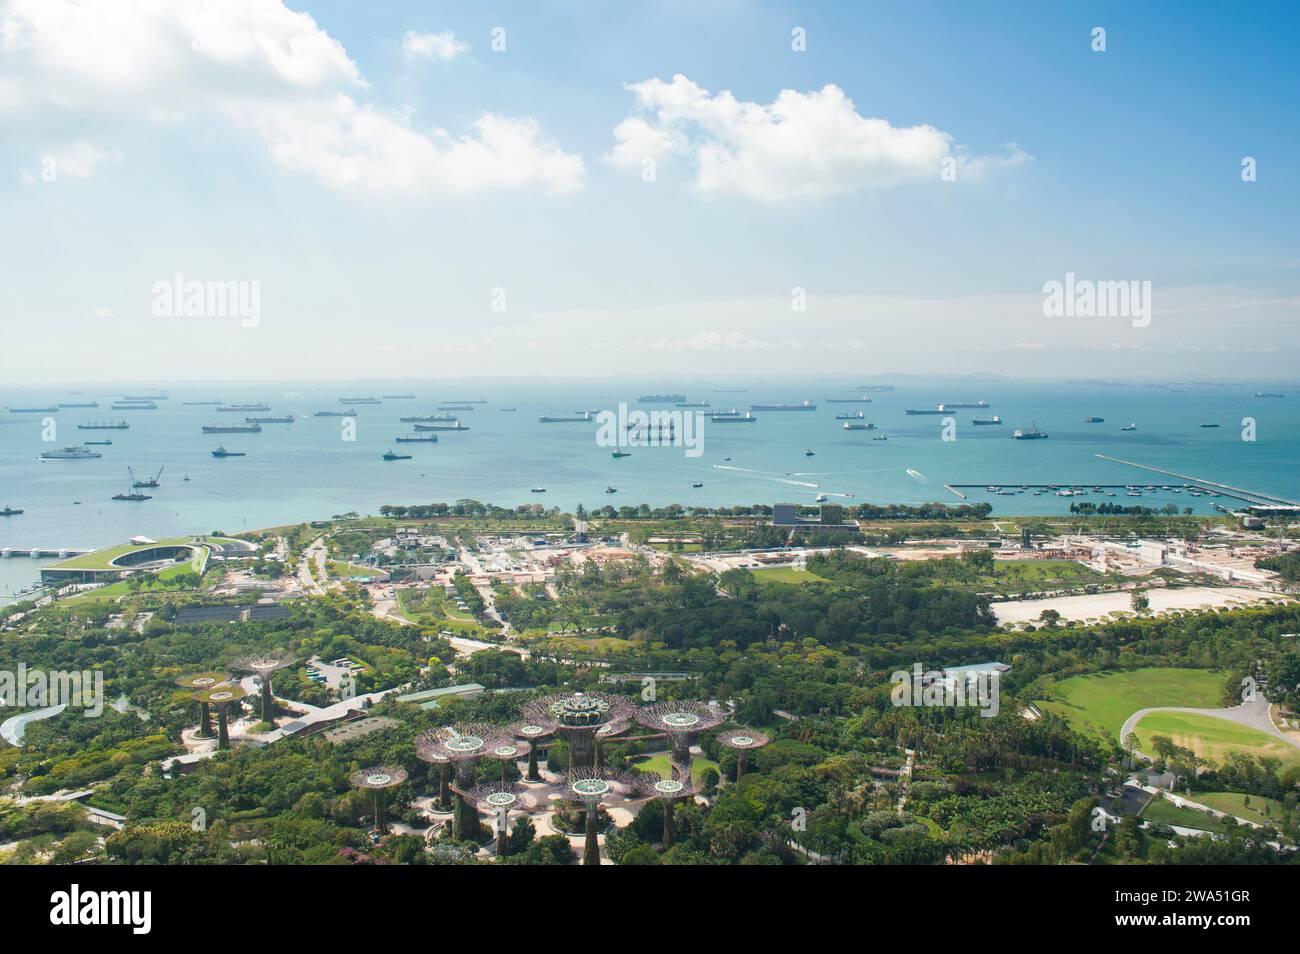 Une vue depuis le pont d'observation Marina Bay Sands de Gardens by the Bay et des navires de fret et de fret dans le détroit de Singapour Banque D'Images